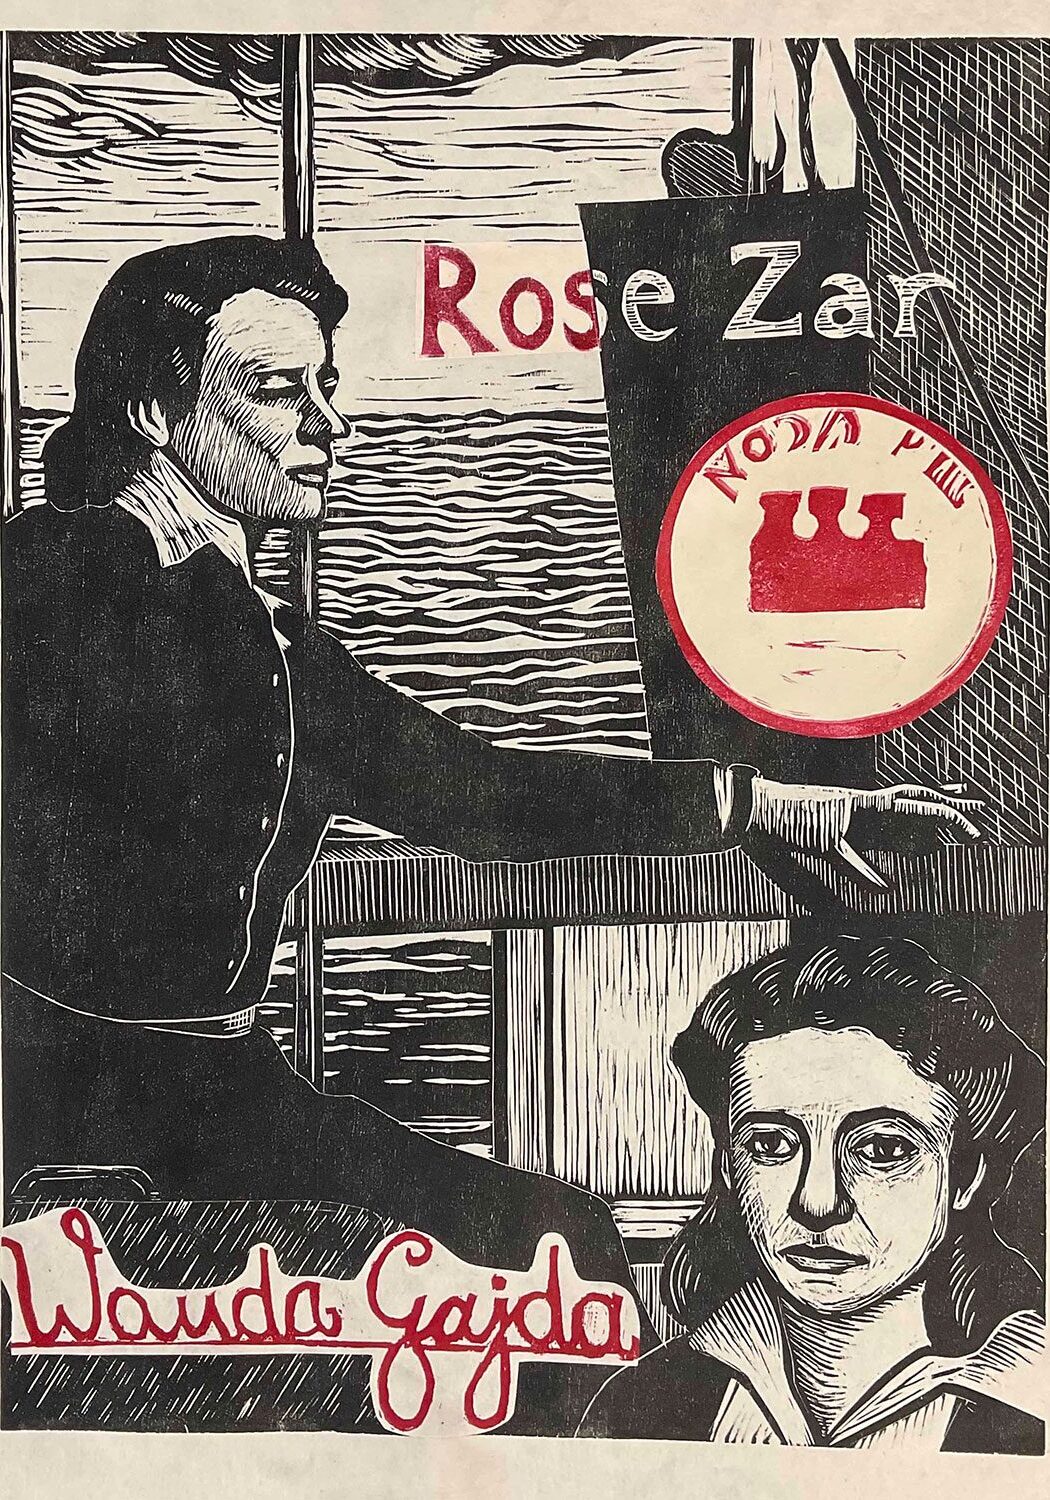 Rose Zar